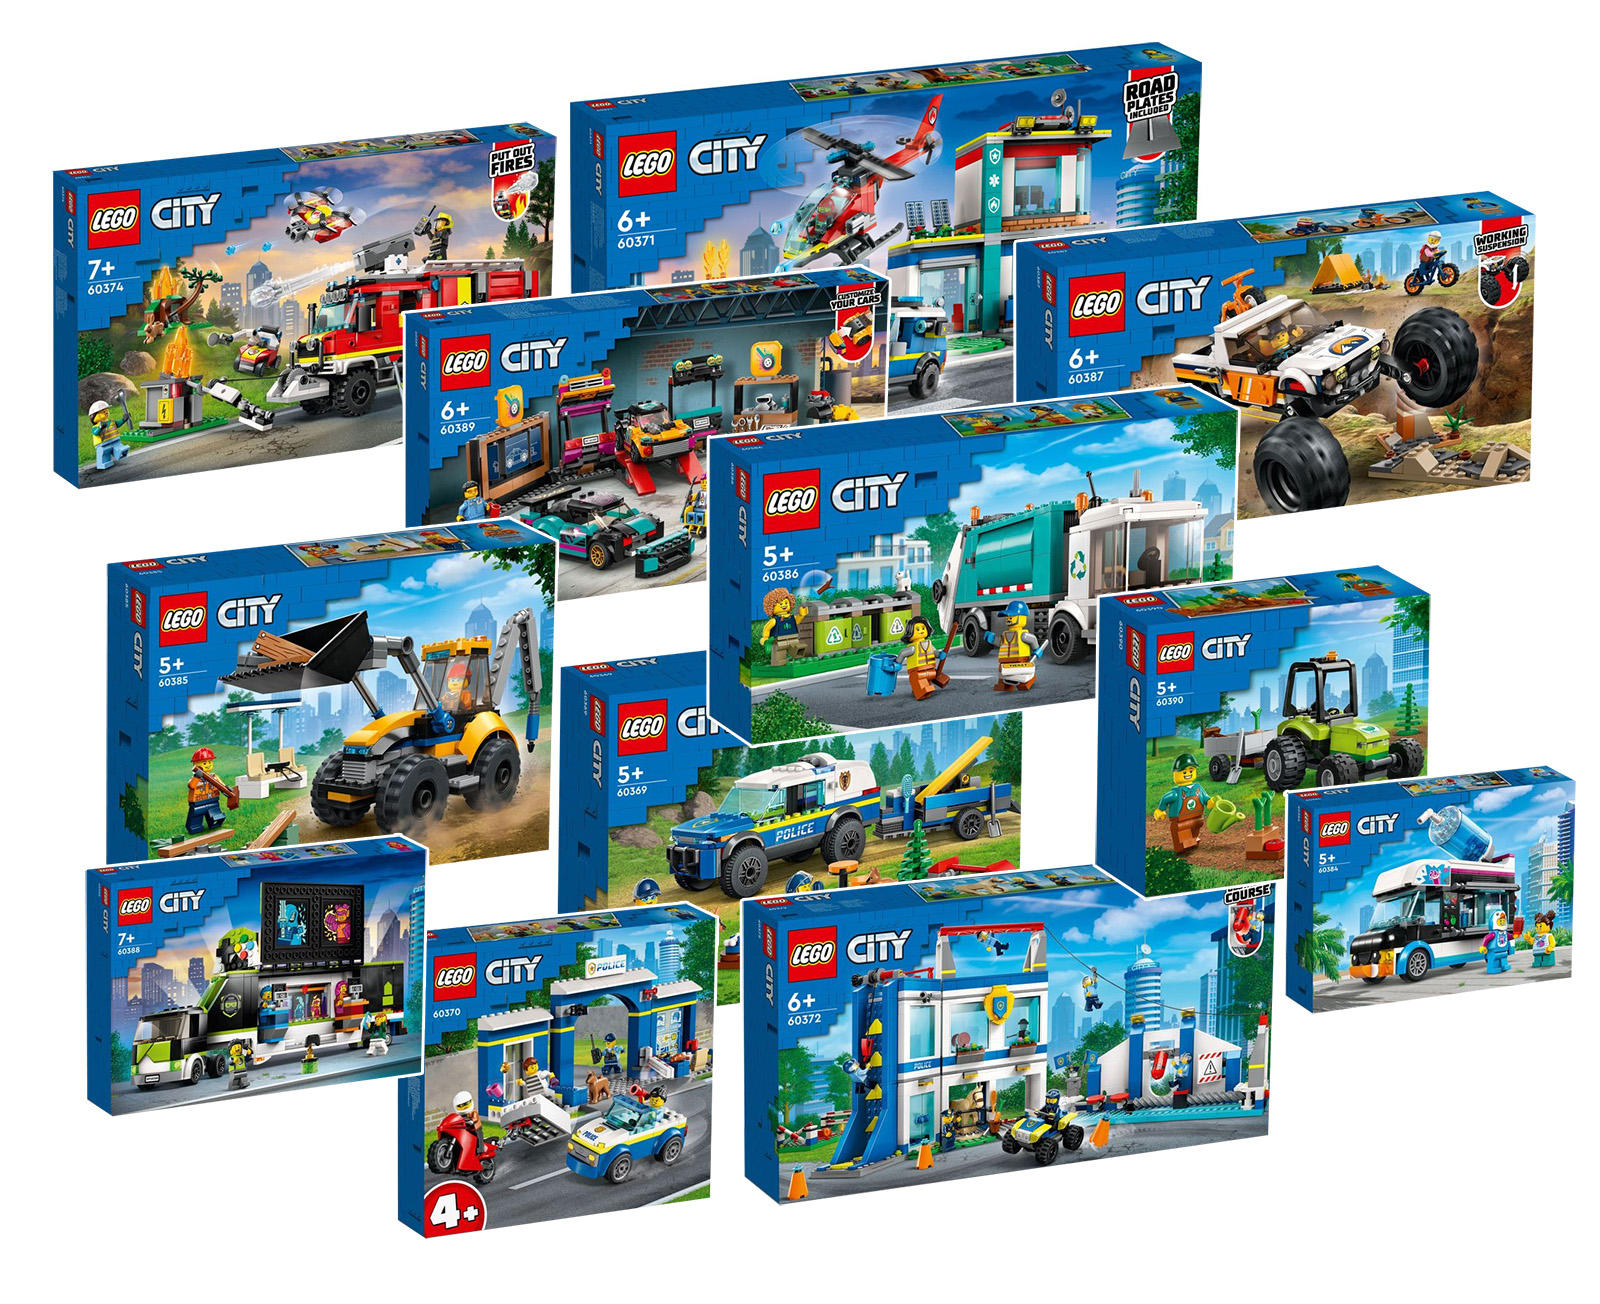 1 m. pirmojo pusmečio LEGO CITY naujovės: yra oficialių vaizdų